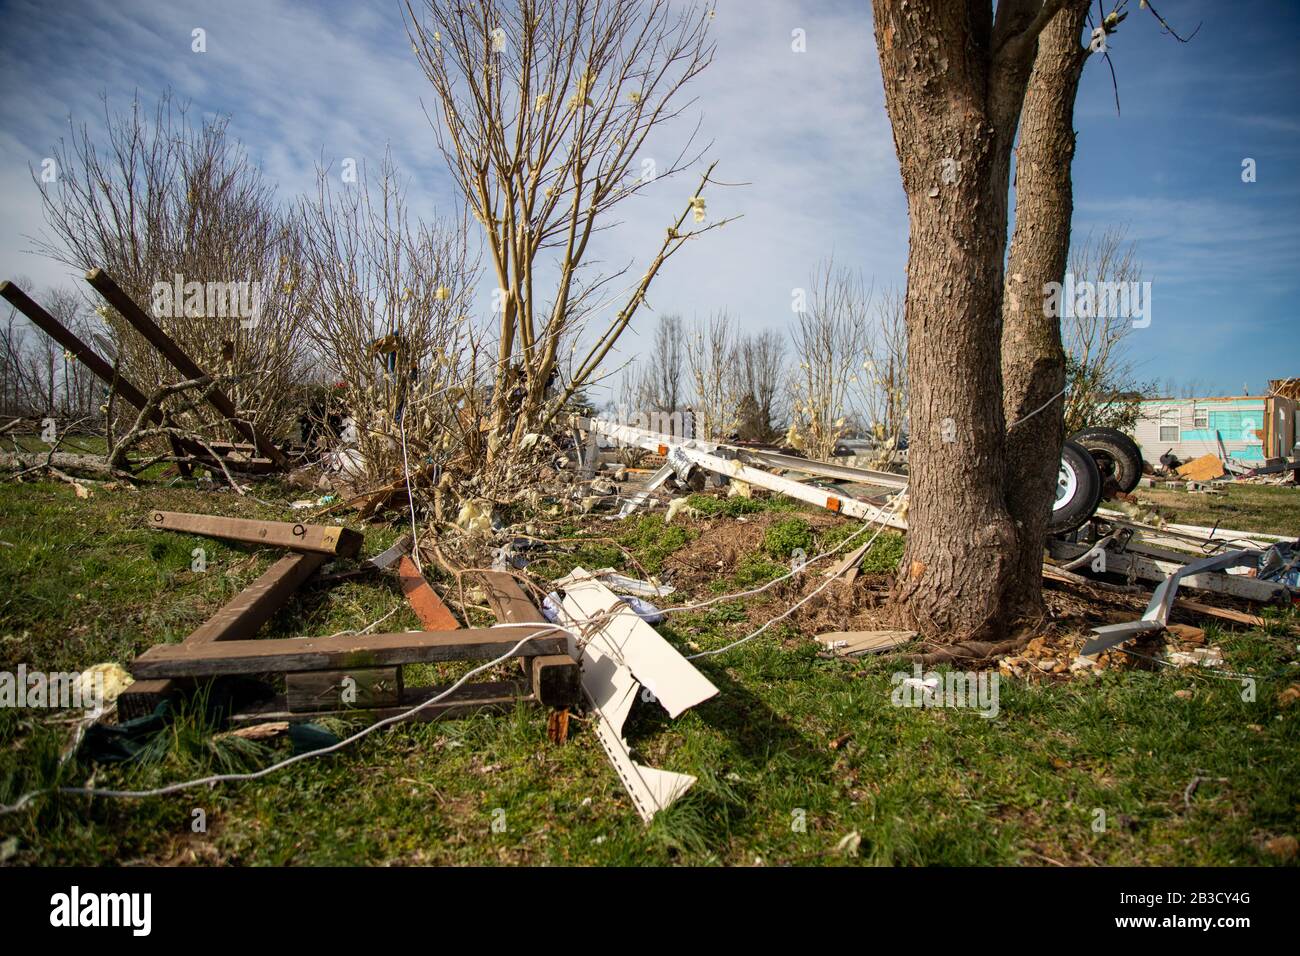 Una casa danneggiata si siede dopo un tornado mortale Giovedi, 4 marzo 2020, a Cookeville, Ten. Tornado strappato in Tennessee primi Martedì, distruggendo edifici e uccidendo più persone. (Foto di IOS/ESPA-Images) Foto Stock